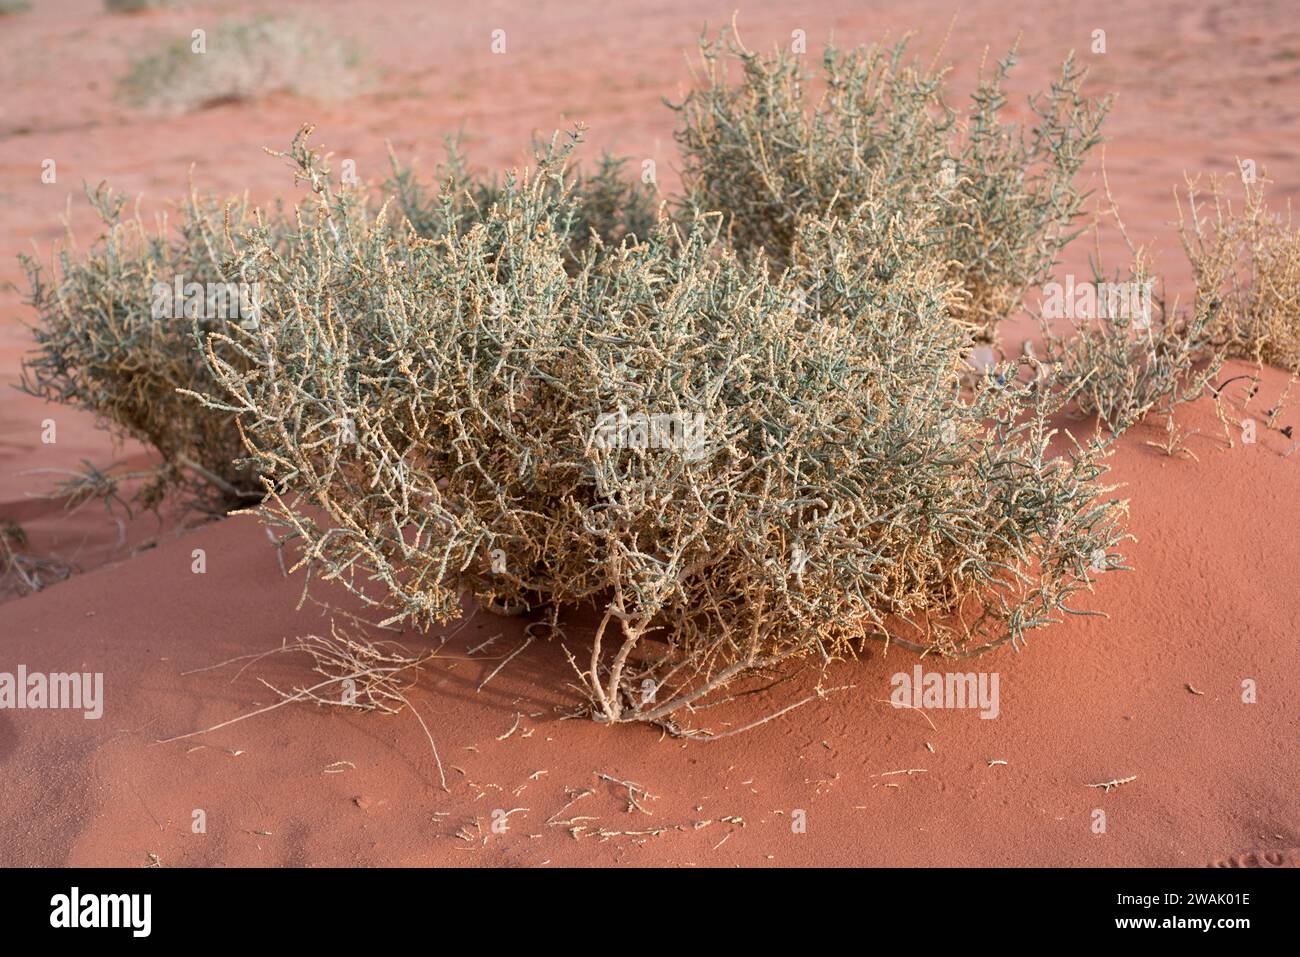 Salicornia enana (Halopeplis amplexicaulis) è un arbusto originario delle regioni aride del bacino del Mediterraneo. Questa foto è stata scattata nel Wadi Rum Desert Natio Foto Stock